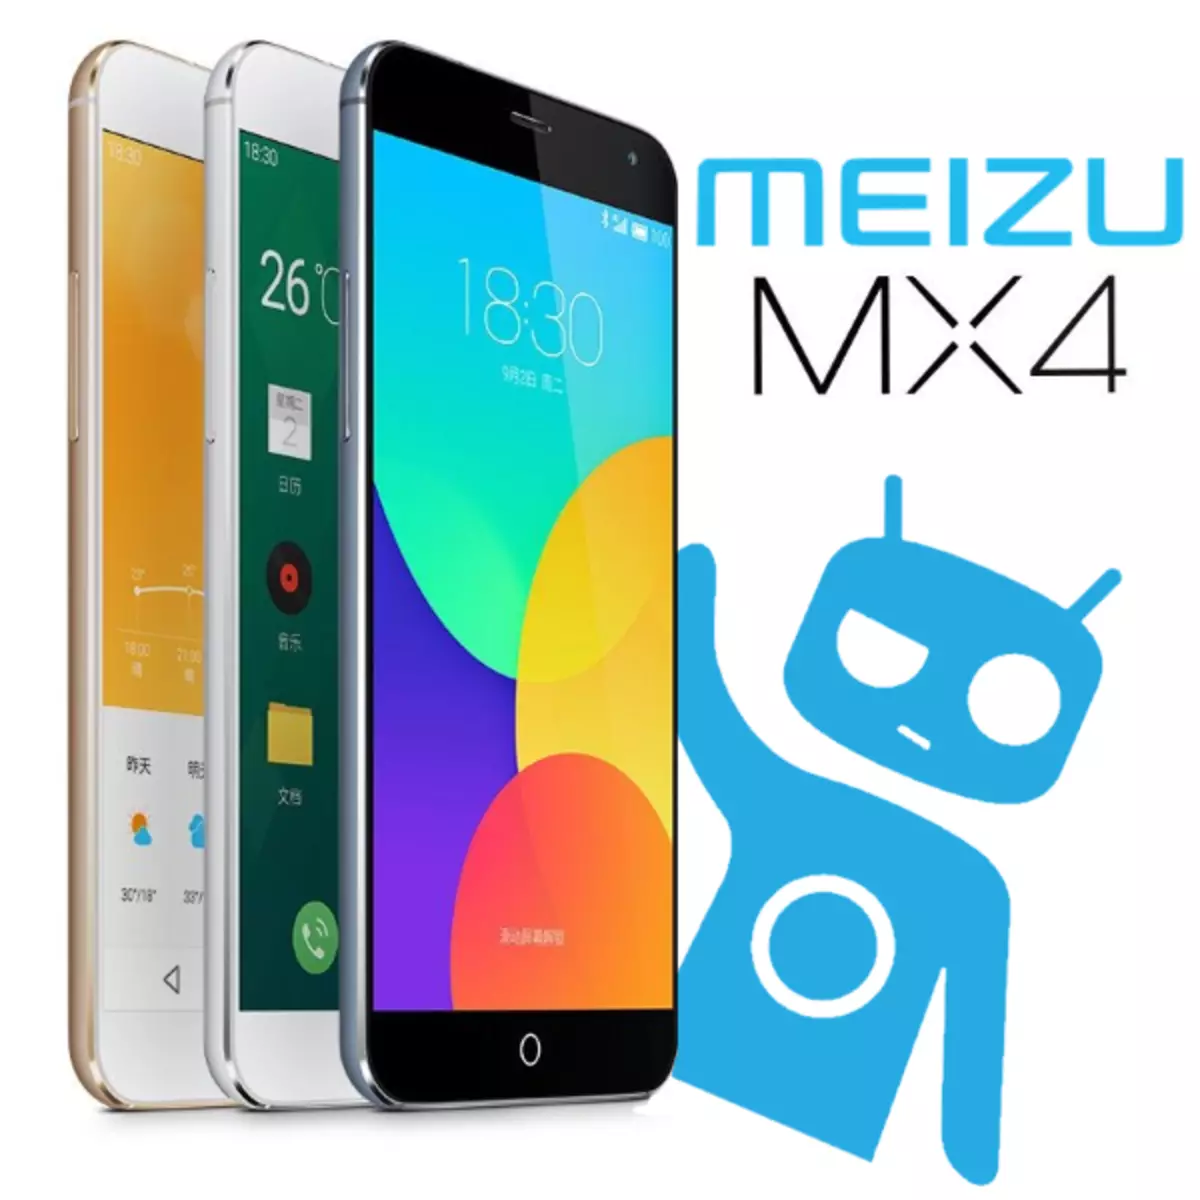 Firmware Meizu MX4.